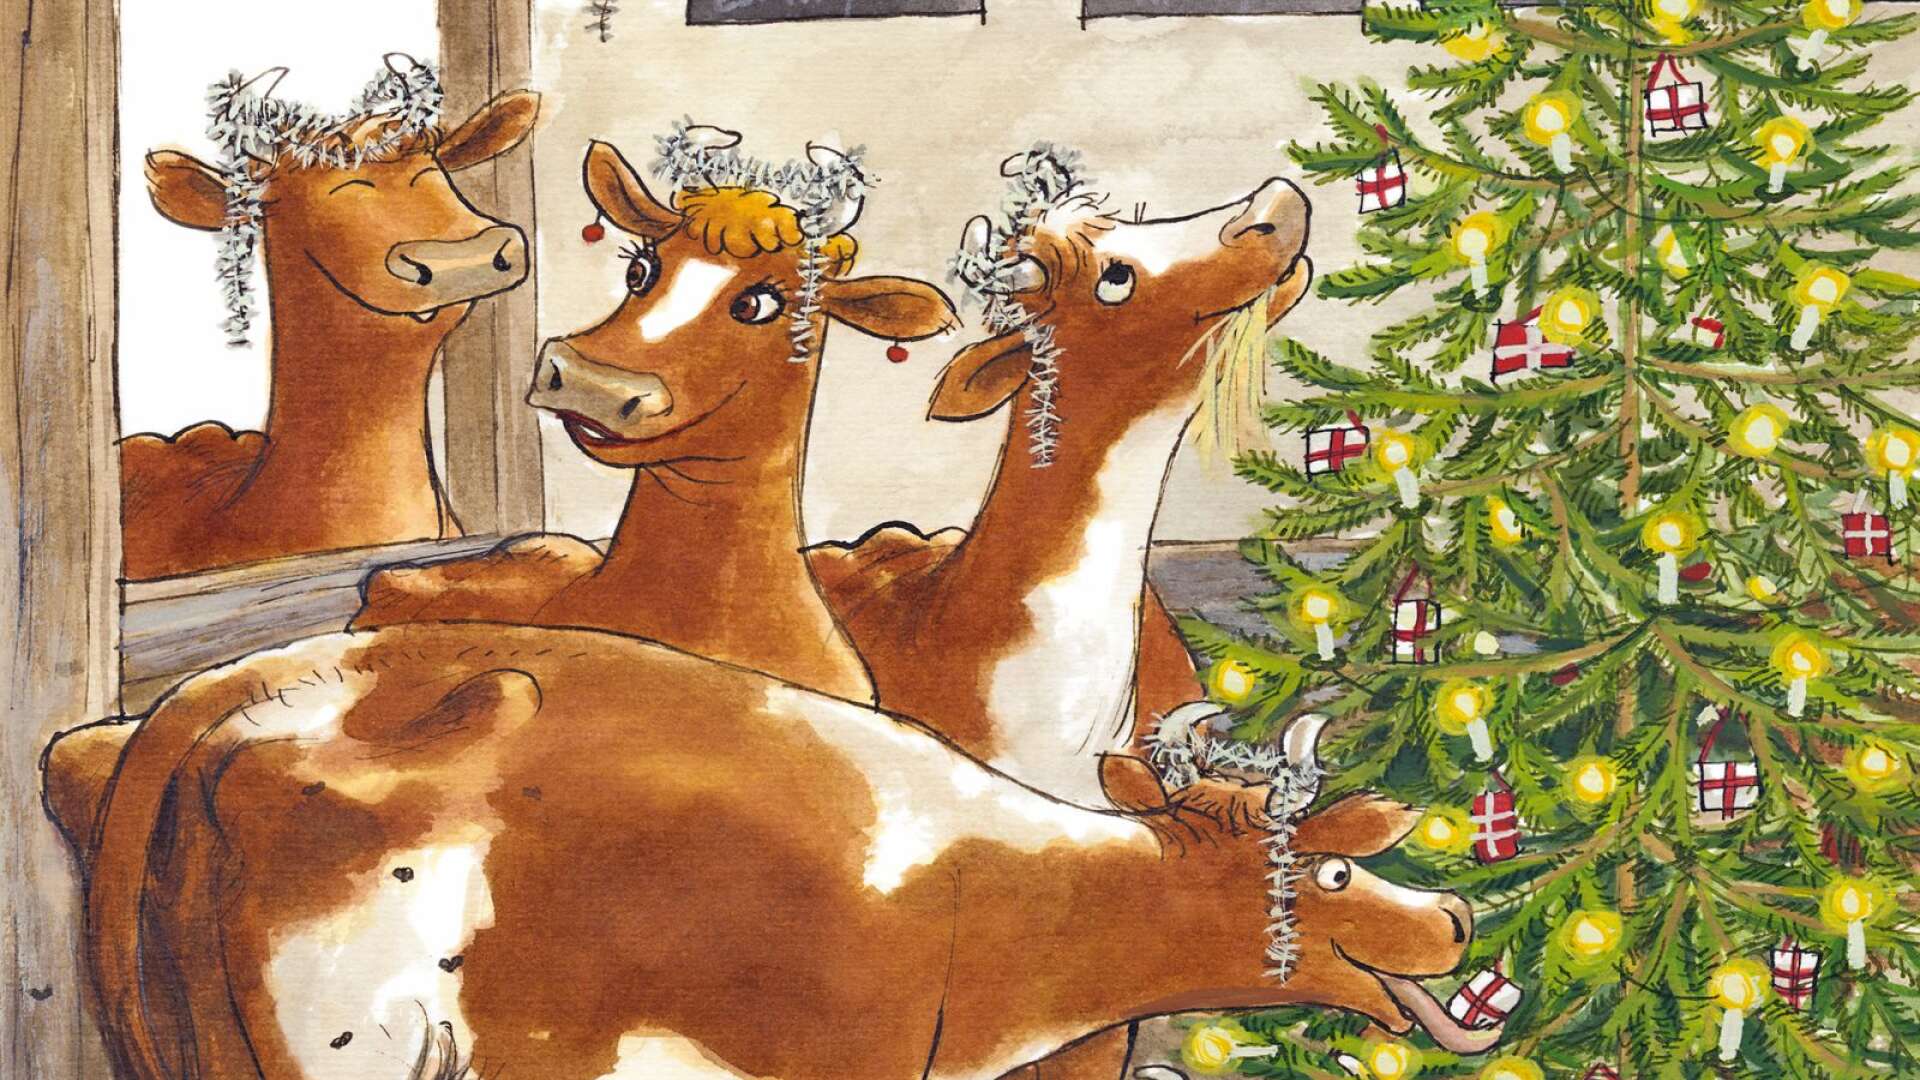 Julmysande kor är bara en av härligheterna som möter läsaren i årets julboksflod. Sven Nordqvists Mamma Mu-bilder finns med i <strong id="strong-4029301292f7003bb5be42c8721fbcbb">Nu firar vi jul, </strong>en av böckerna som kan bli en jultradition i sig.